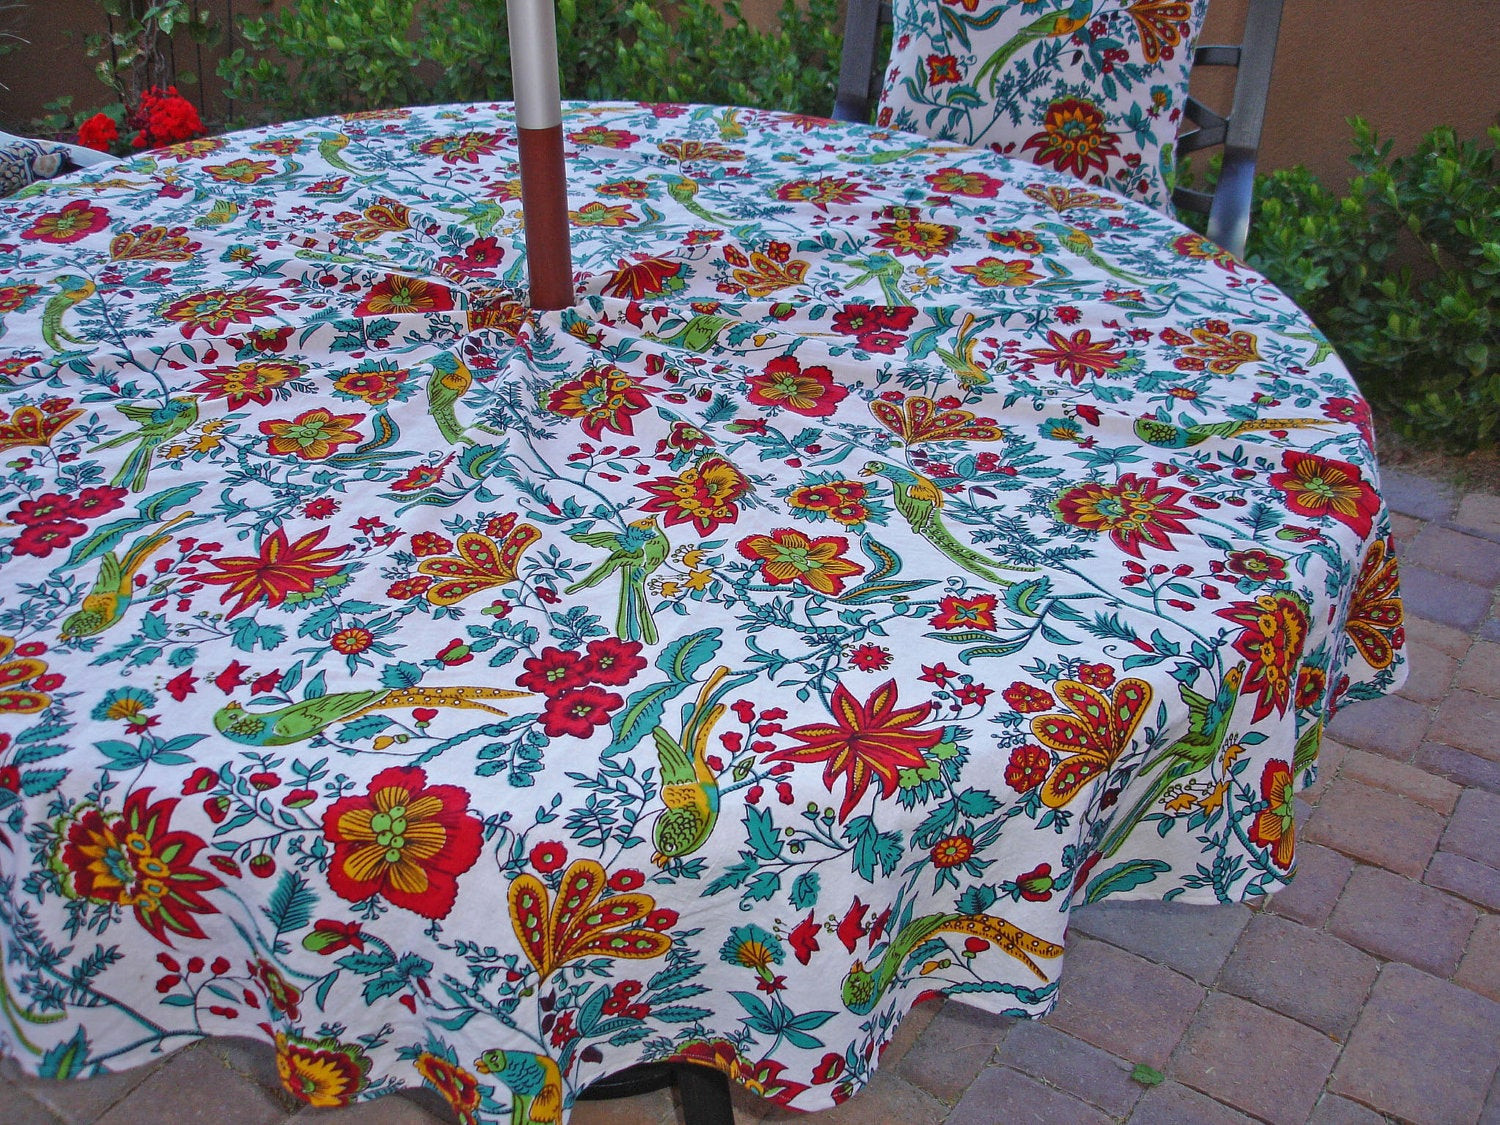 Christmas Tree Shops Patio Umbrella
 Umbrella Outdoor Tablecloth Red Floral Tropical Garden